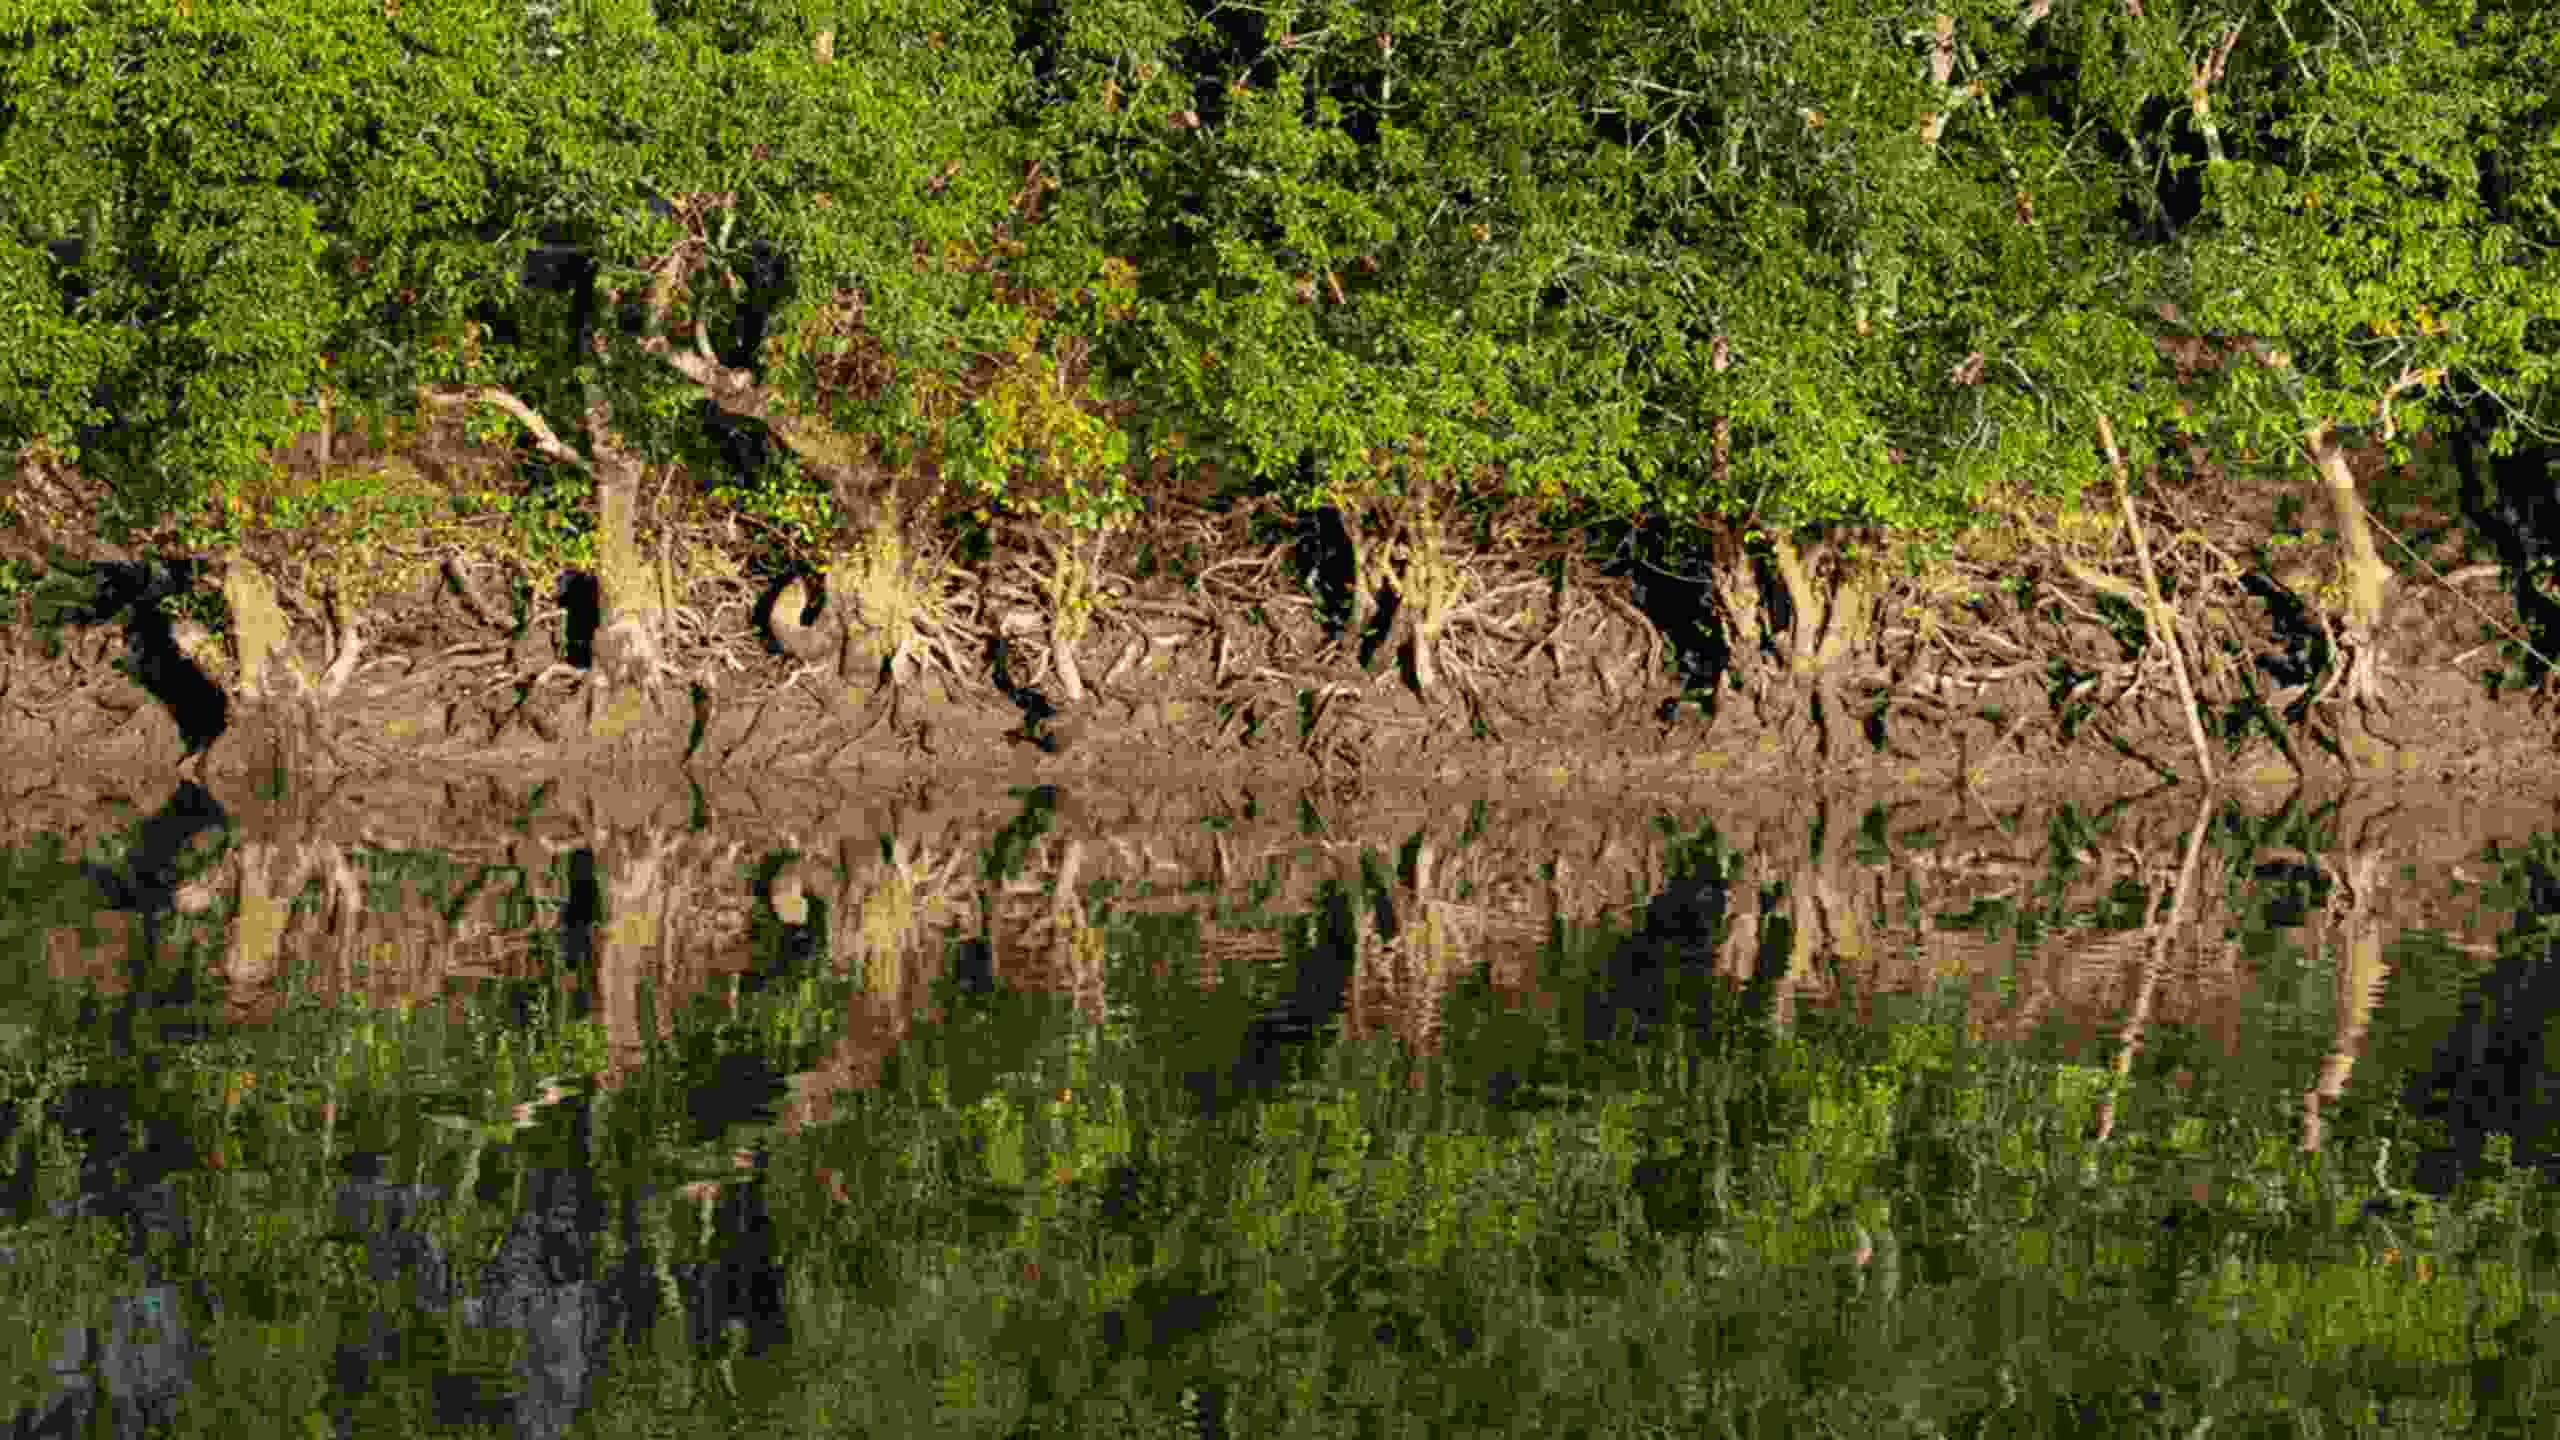 Sundarban tour